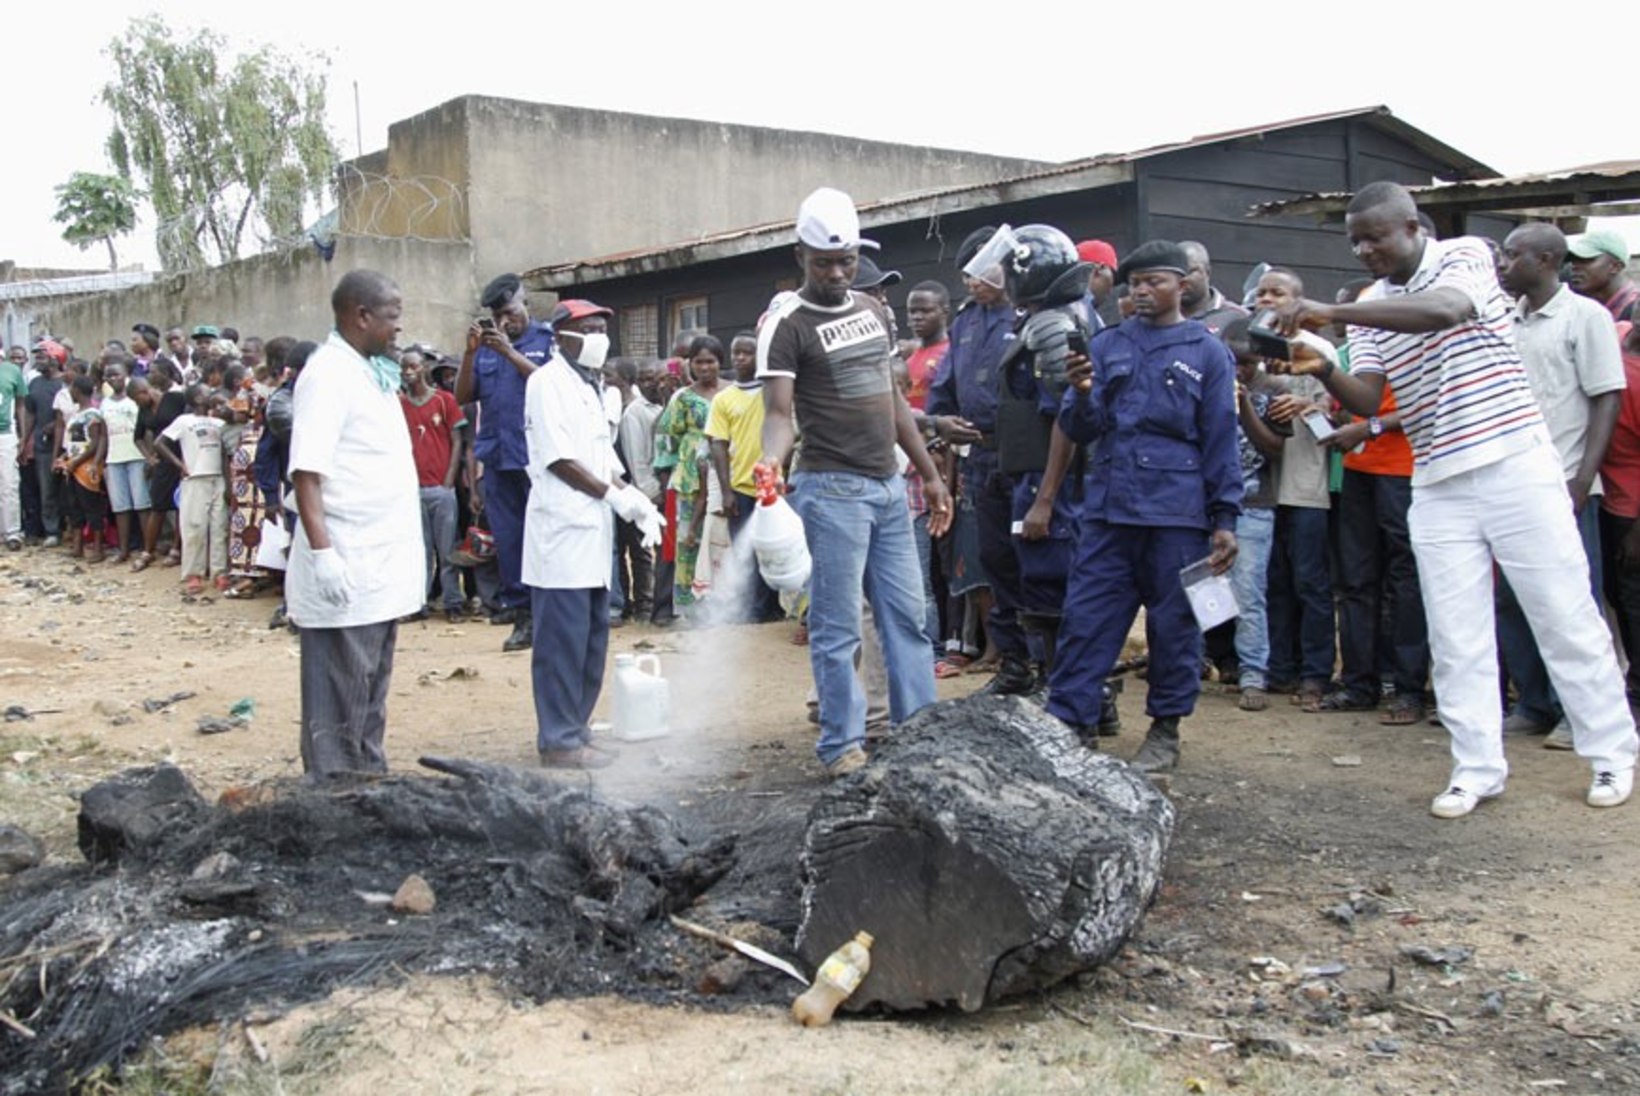 FOTOD: Kongos pilluti kahtlane mees kividega surnuks, põletati ja söödi